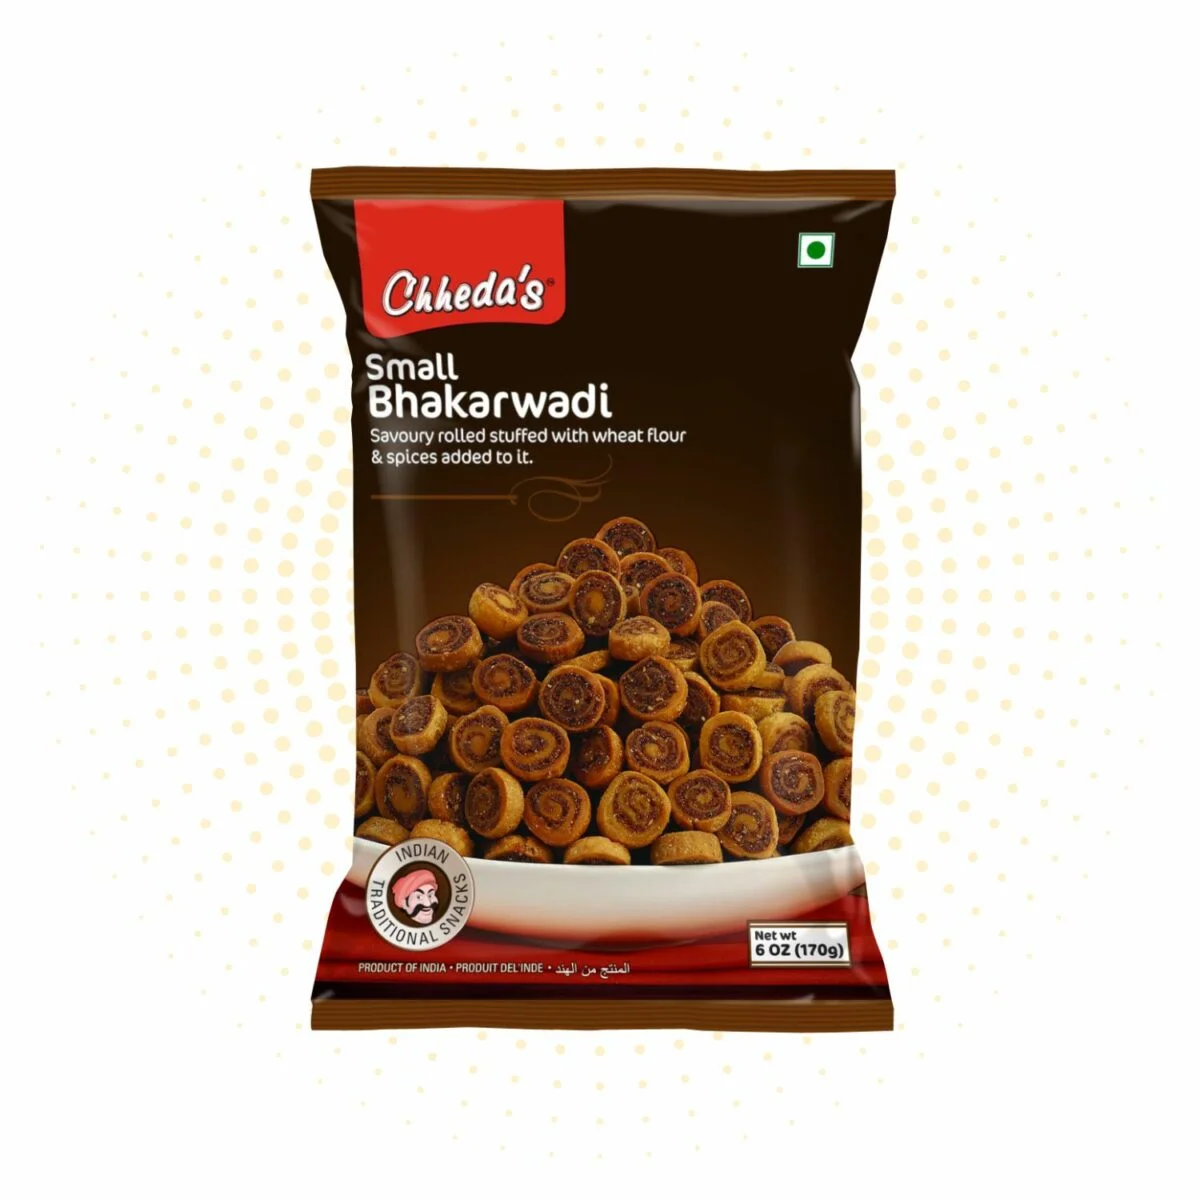 Small Bhakarwadi – Chheda's